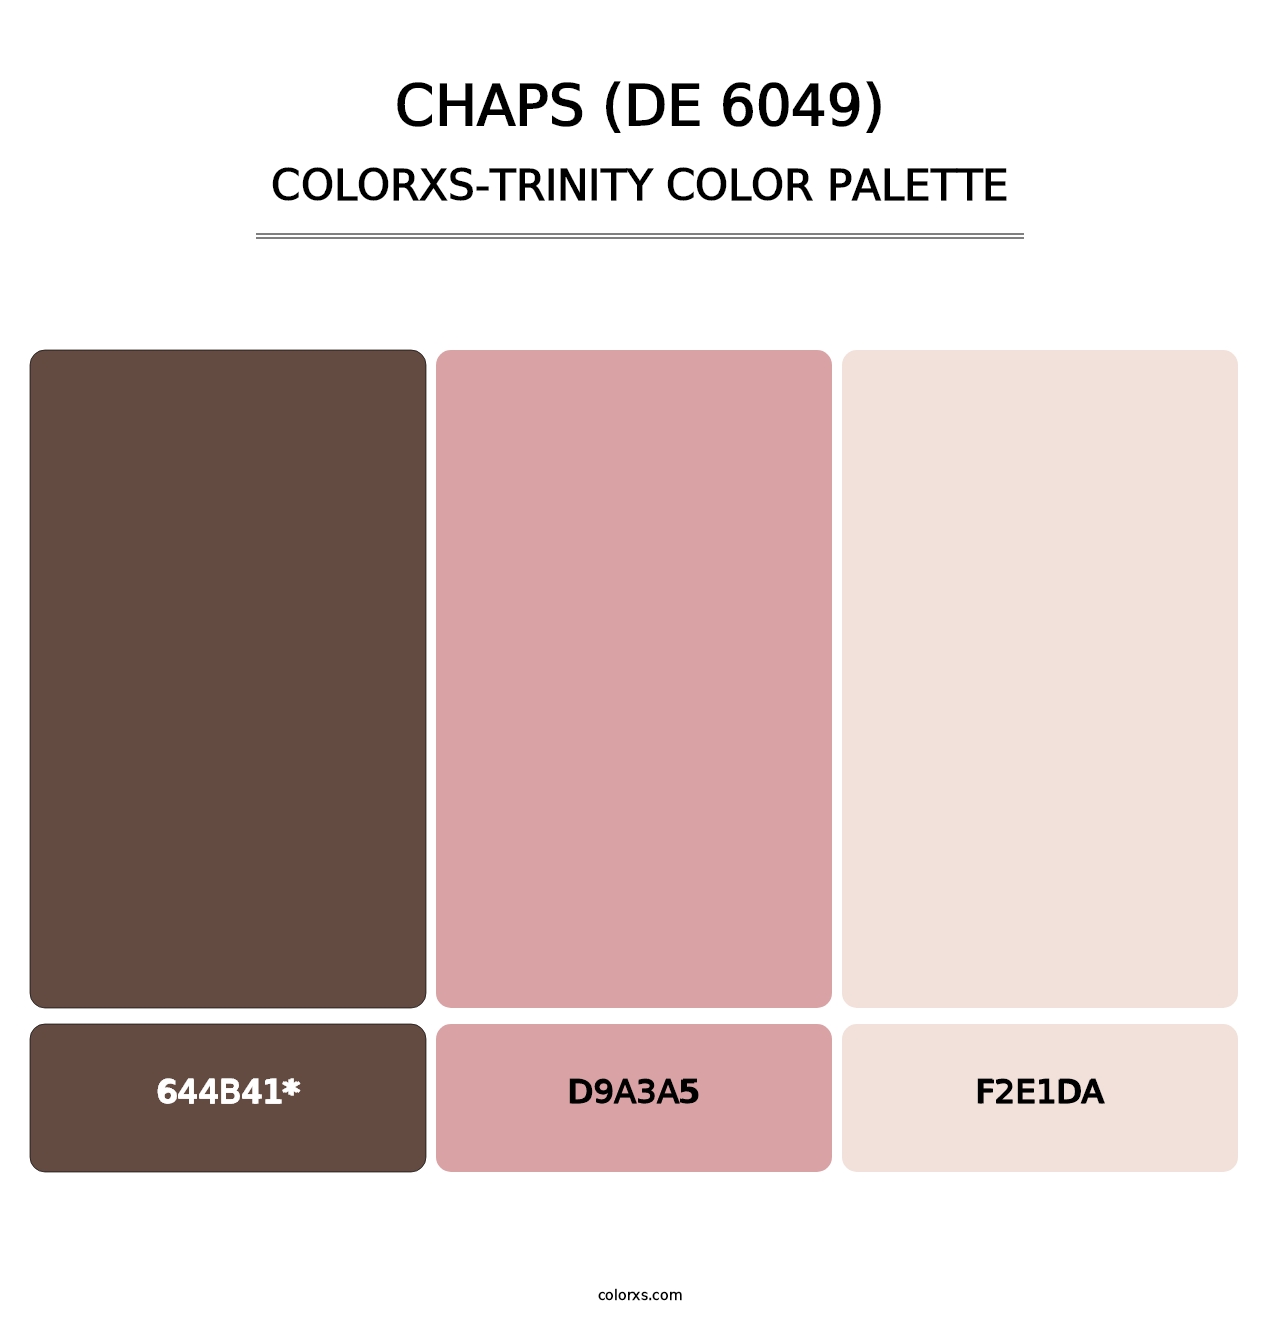 Chaps (DE 6049) - Colorxs Trinity Palette